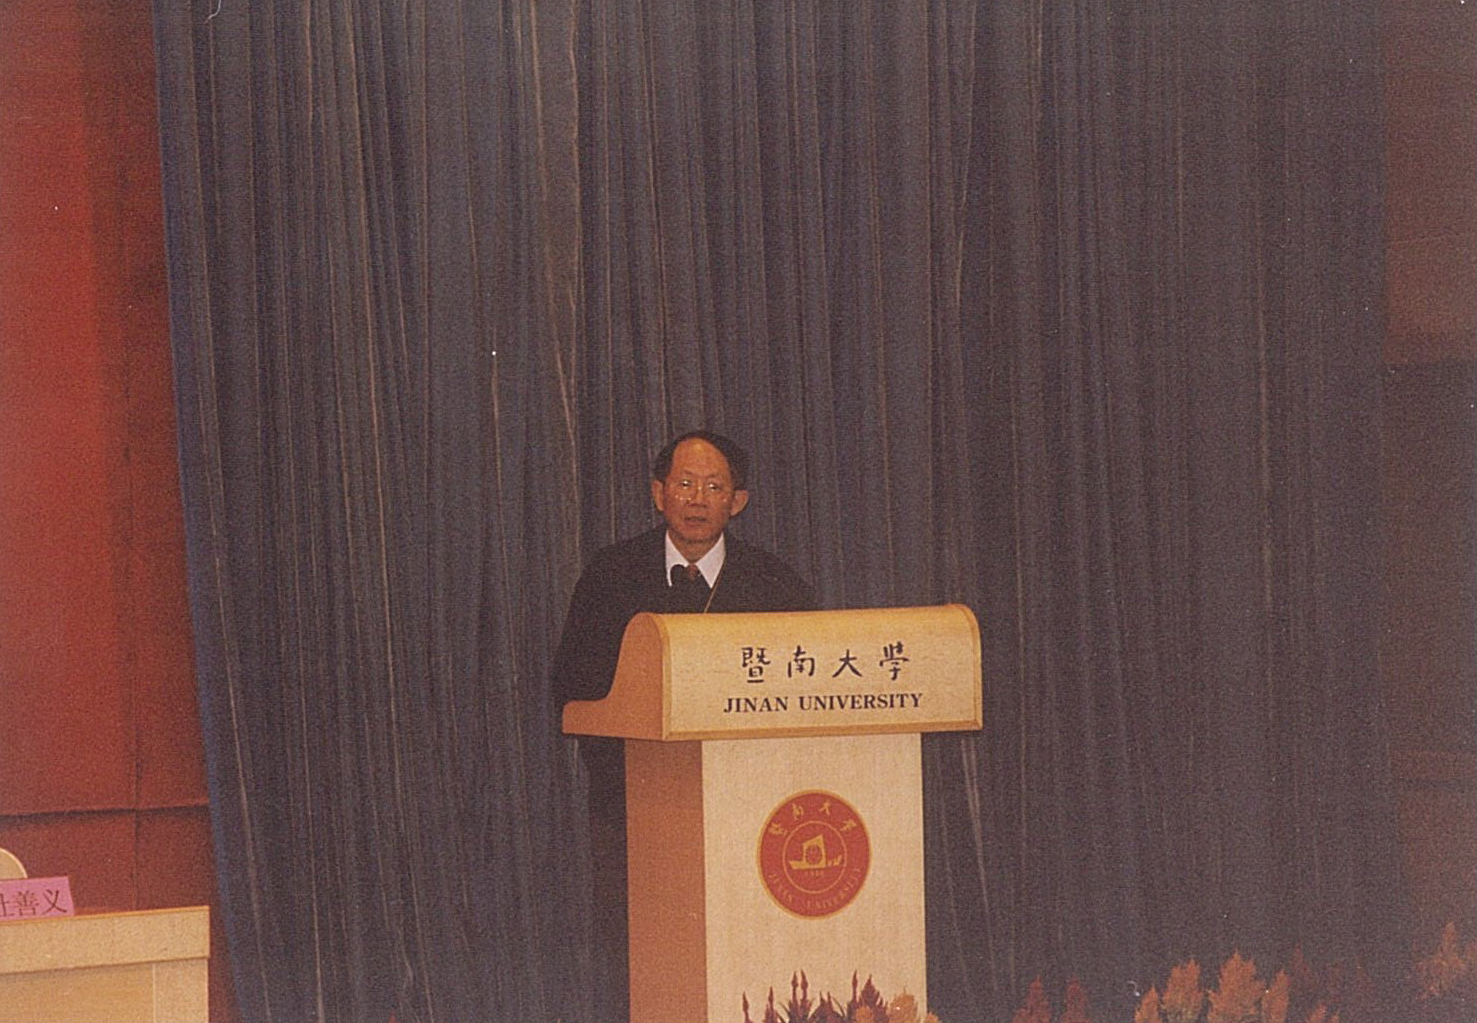 第六、七届理事会扩大会议在广州暨南大学召开（2002年11月21日-24日），白以龙出席会议。